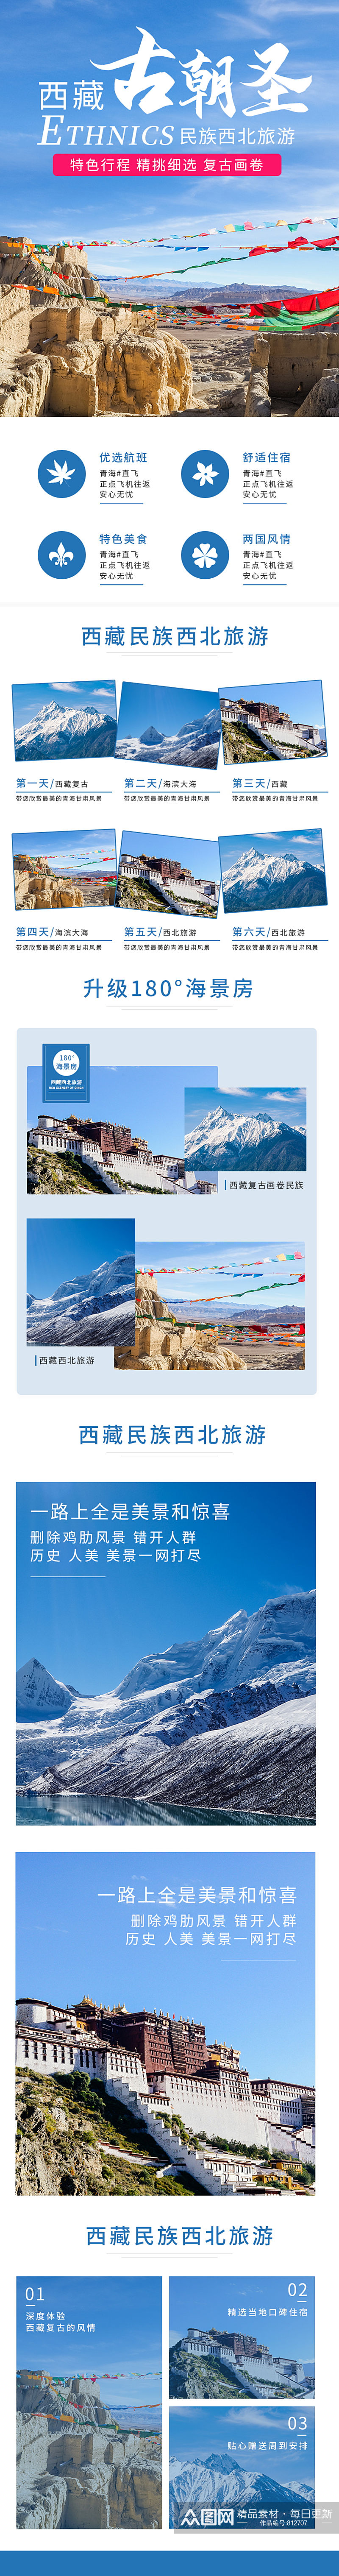 复古风西藏画卷民族西北旅游详情页素材